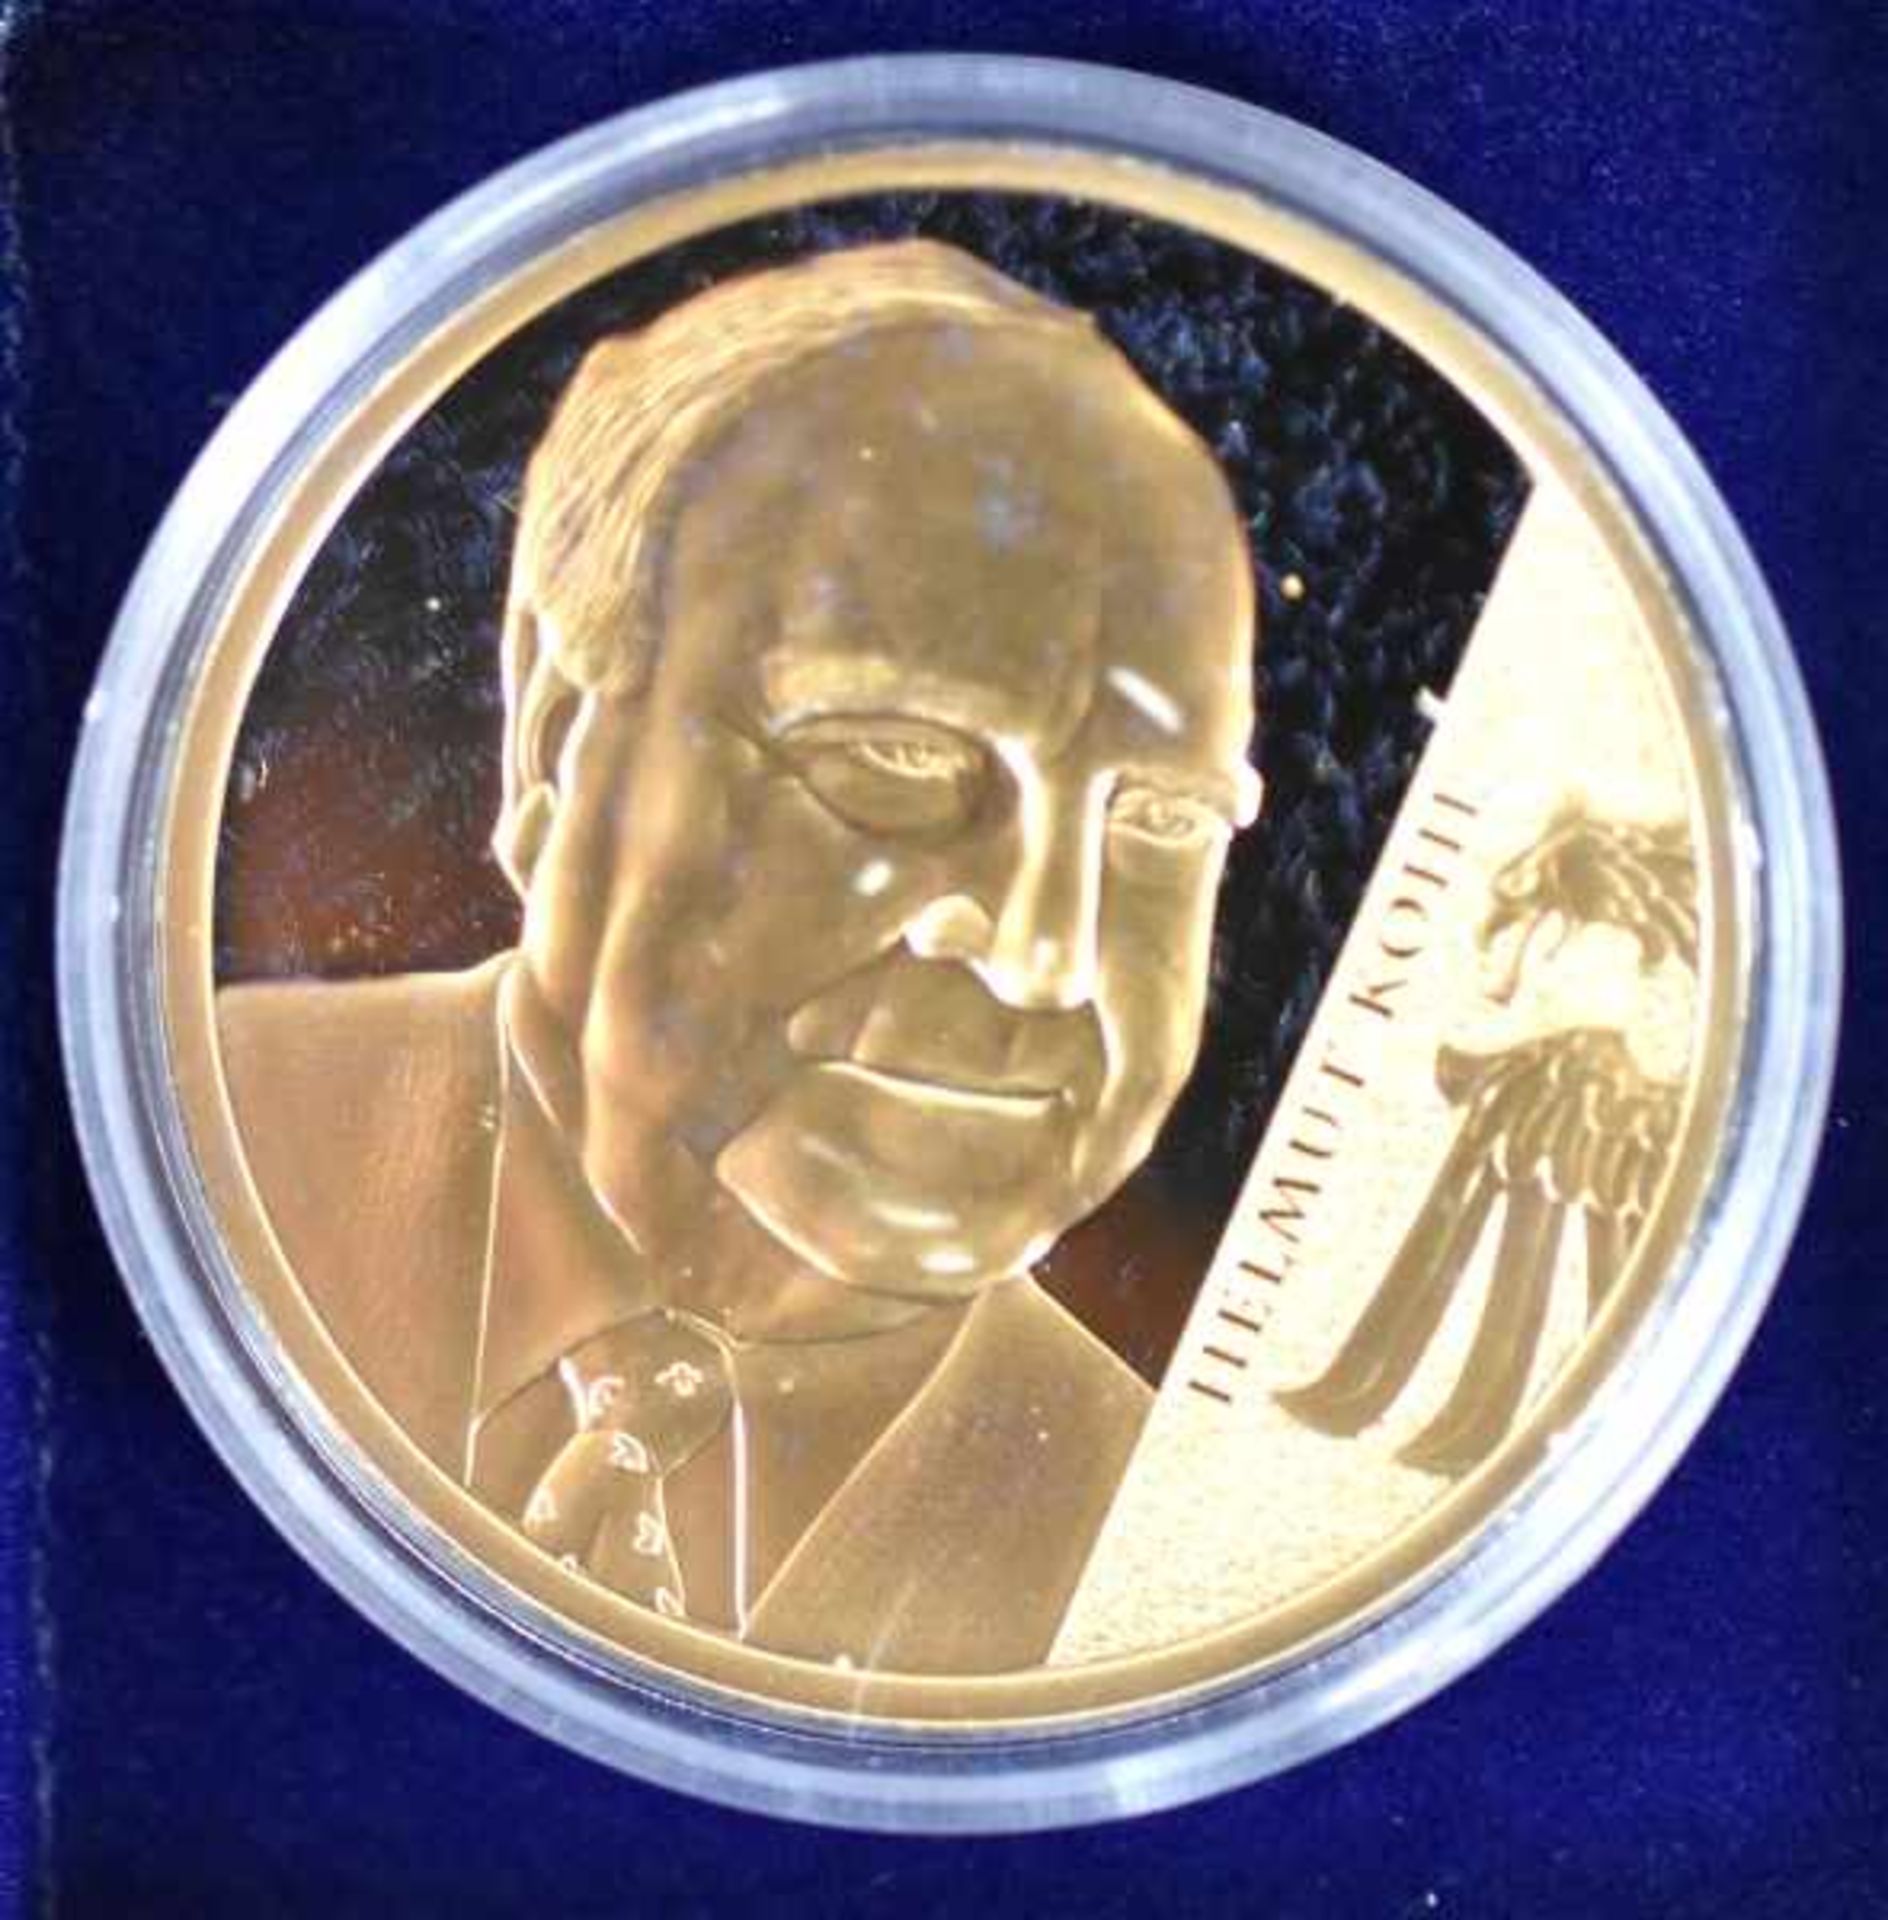 VIER MUENZSAMMLUNGEN verschieden: "Damals in der DDR" 12 Münzen, kupfer-vergoldet, D 40 mm PP, im - Bild 7 aus 8